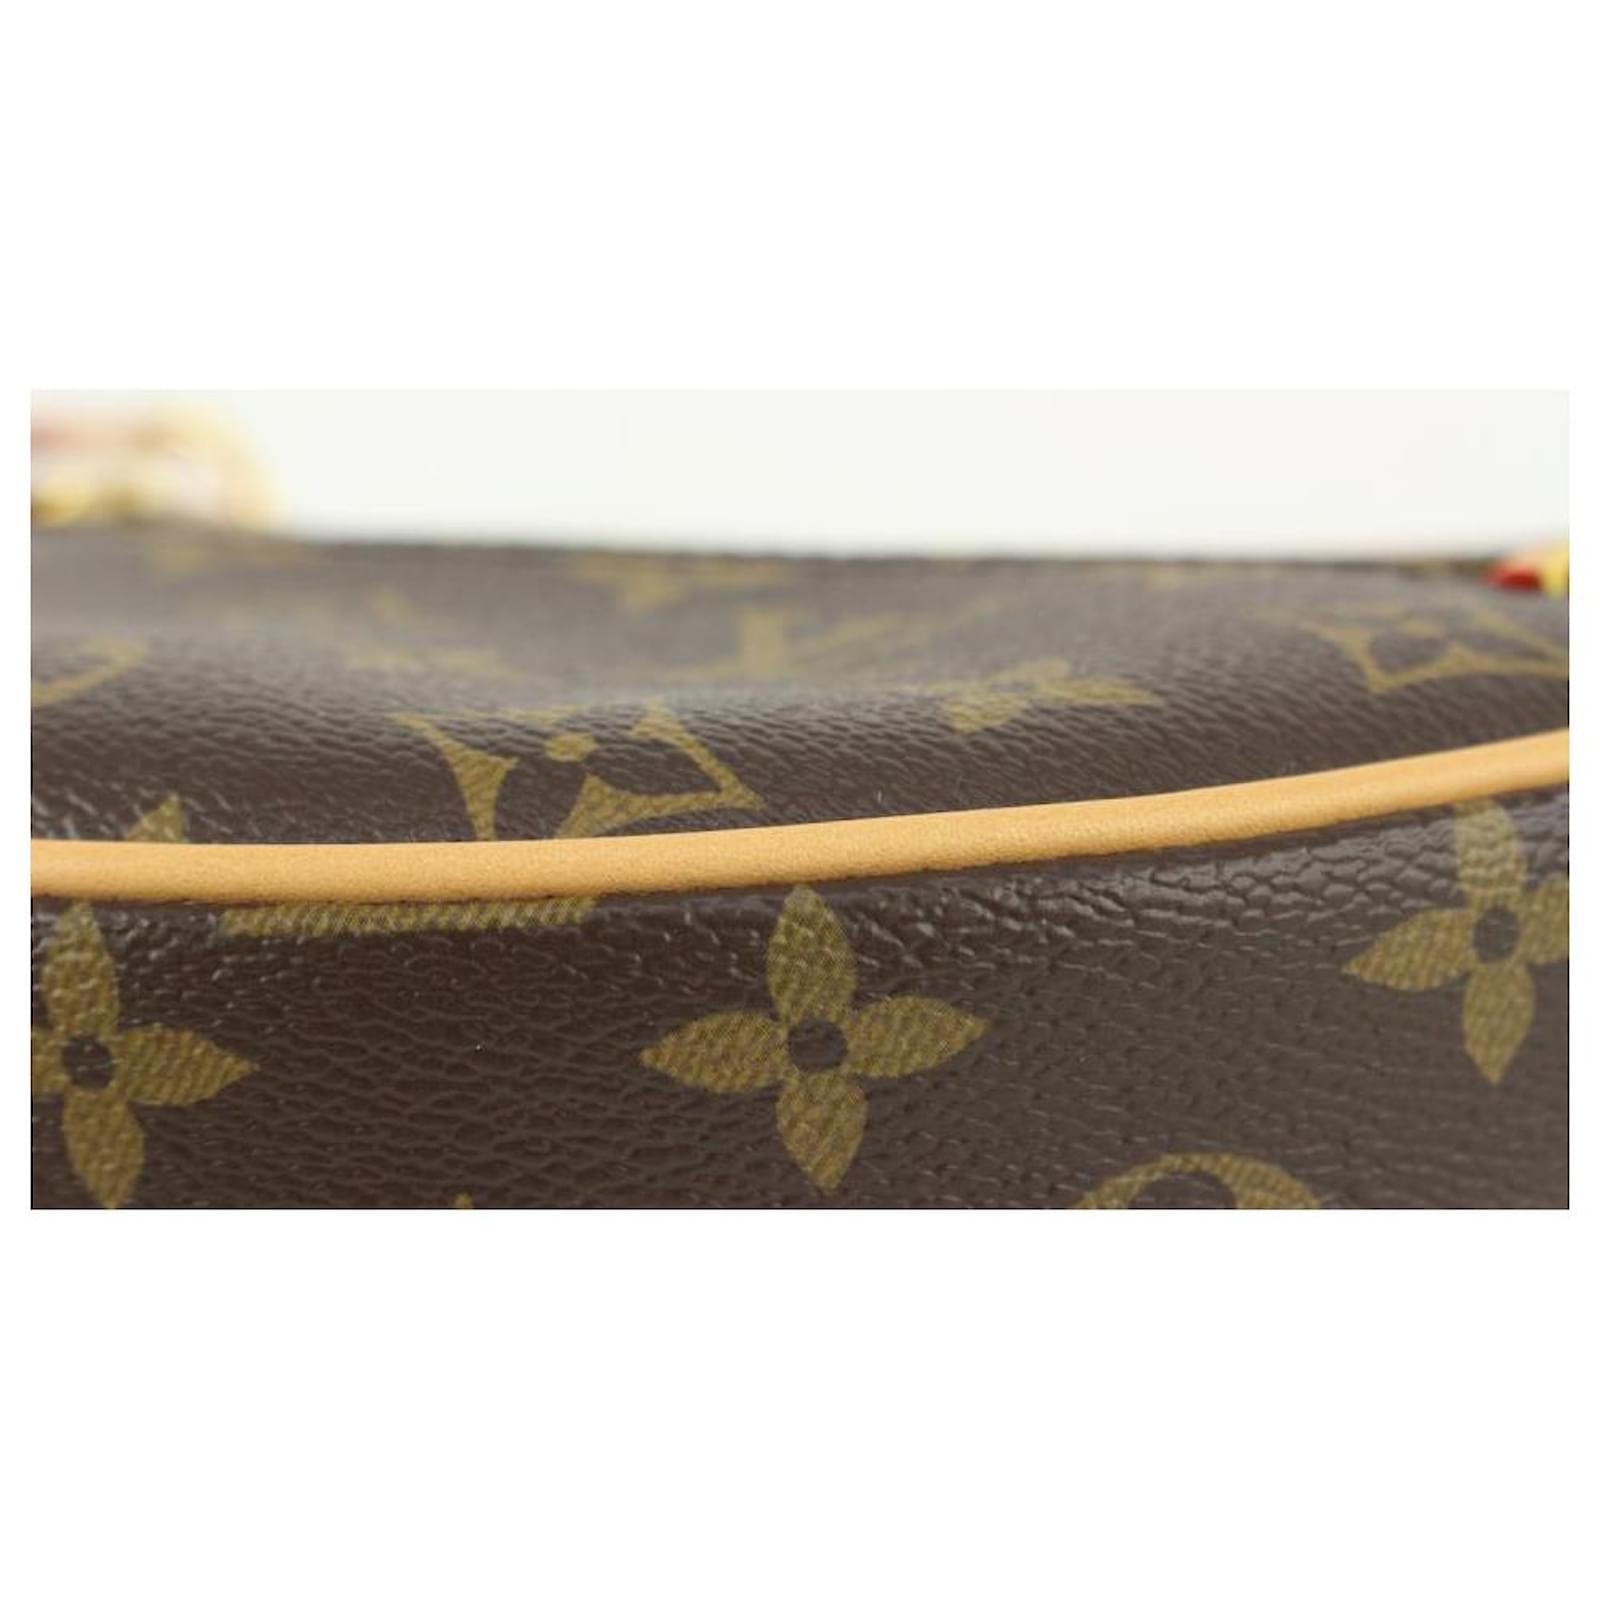 Louis Vuitton Rare Monogram Loop Chain Hobo Crossbody Bag